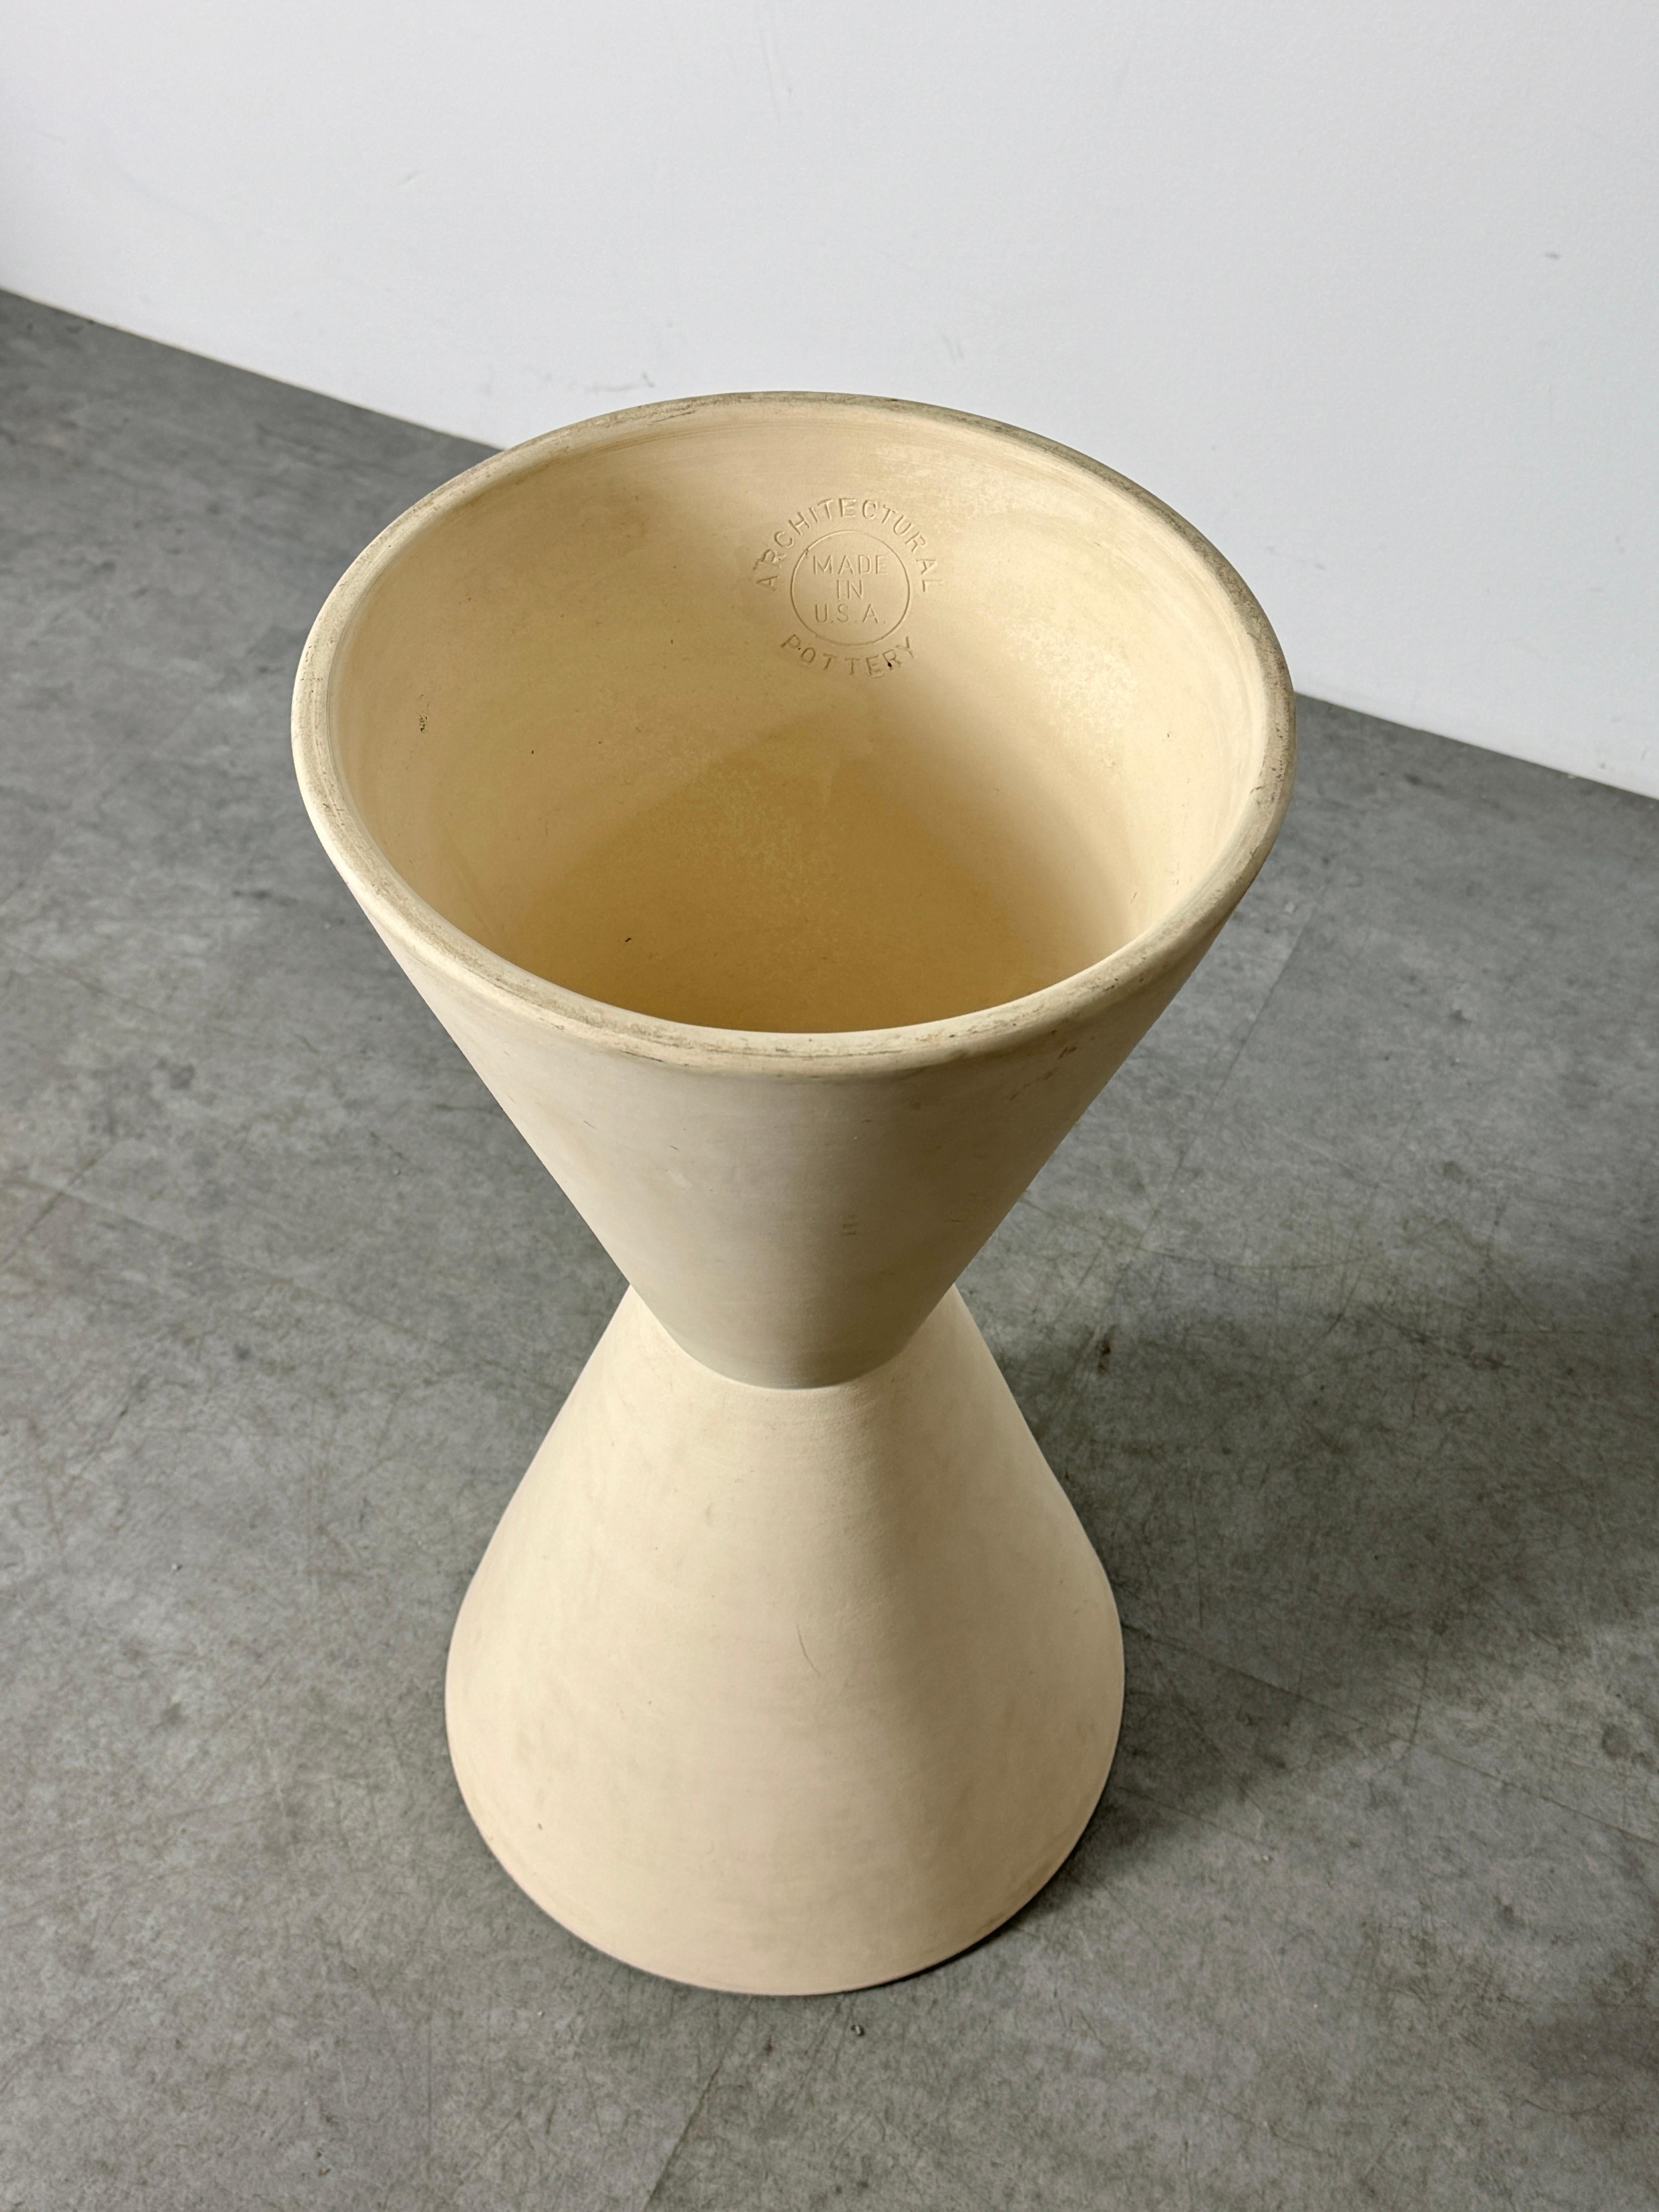 Lagardo Tackett Double Cone Architectural Pottery Planter Bisque Ceramic 1950s For Sale 2